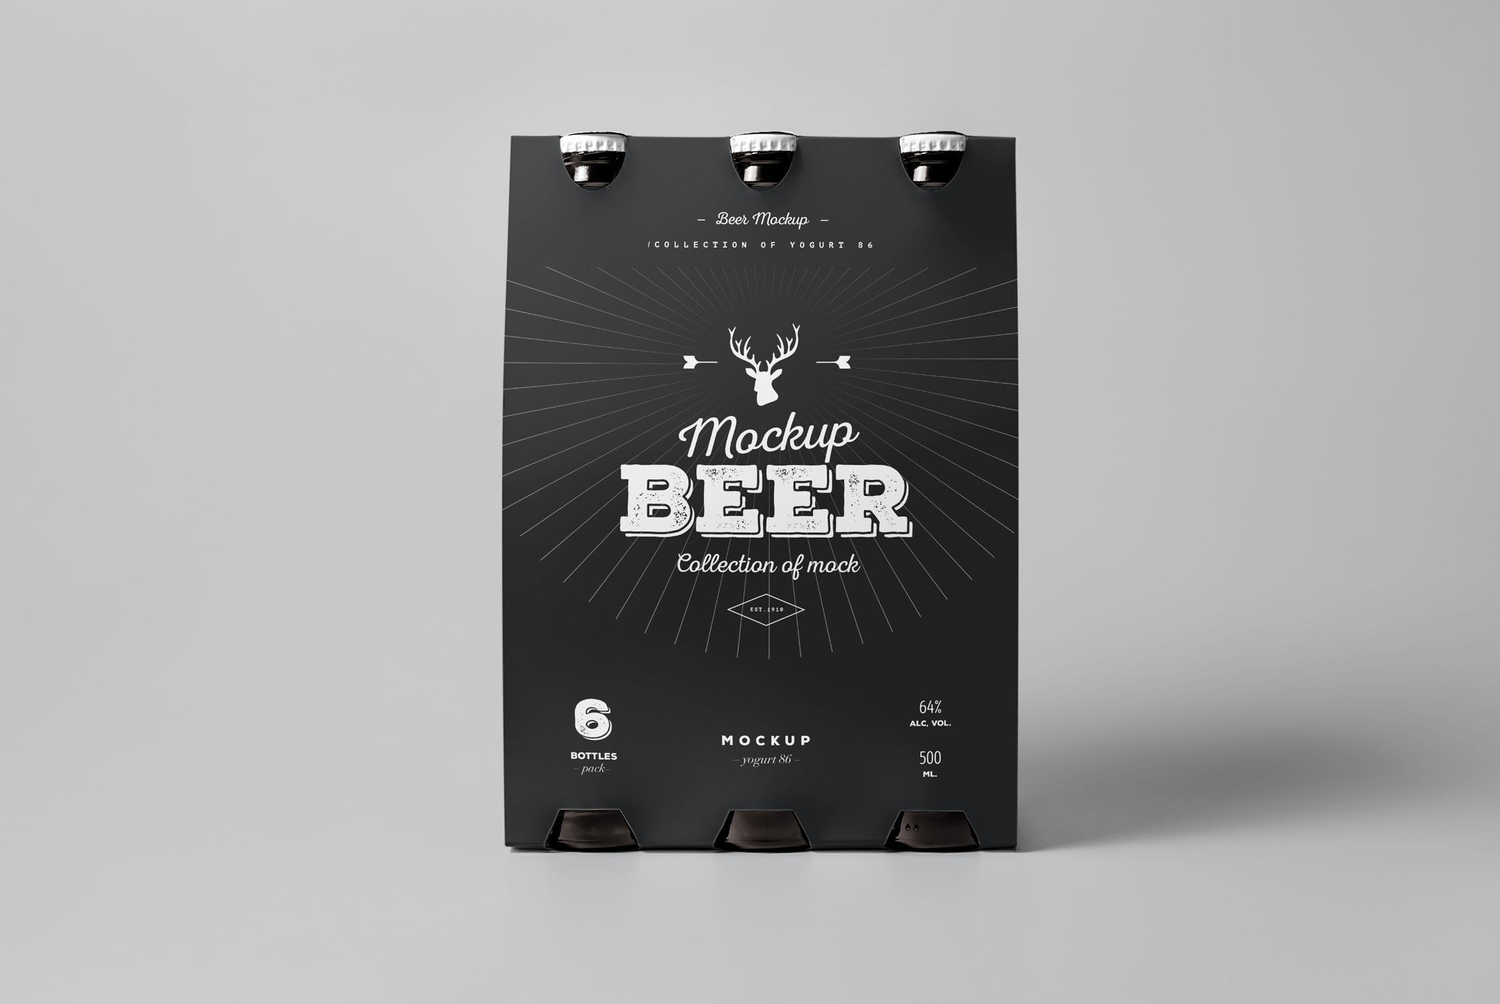 4759 啤酒瓶酒标产品包装设计样机素材组合多角度展示ps空白贴图模板 Beer Mock-up@GOOODME.COM